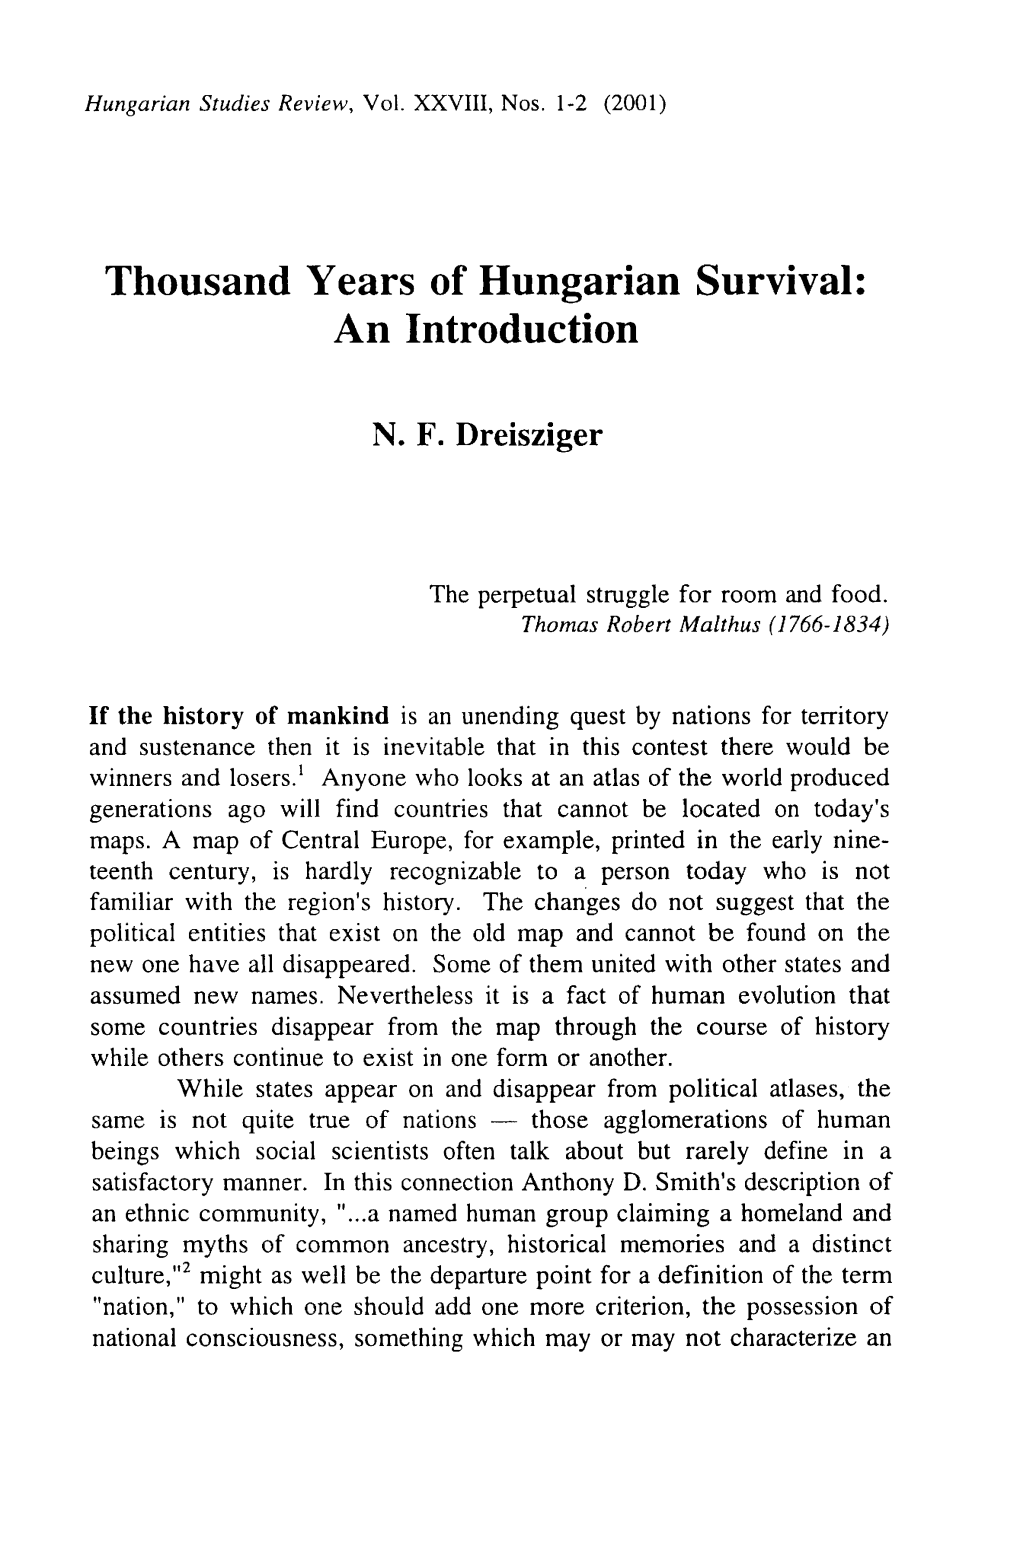 Hungarian Studies Review 17 (Fall 1990): 11-19